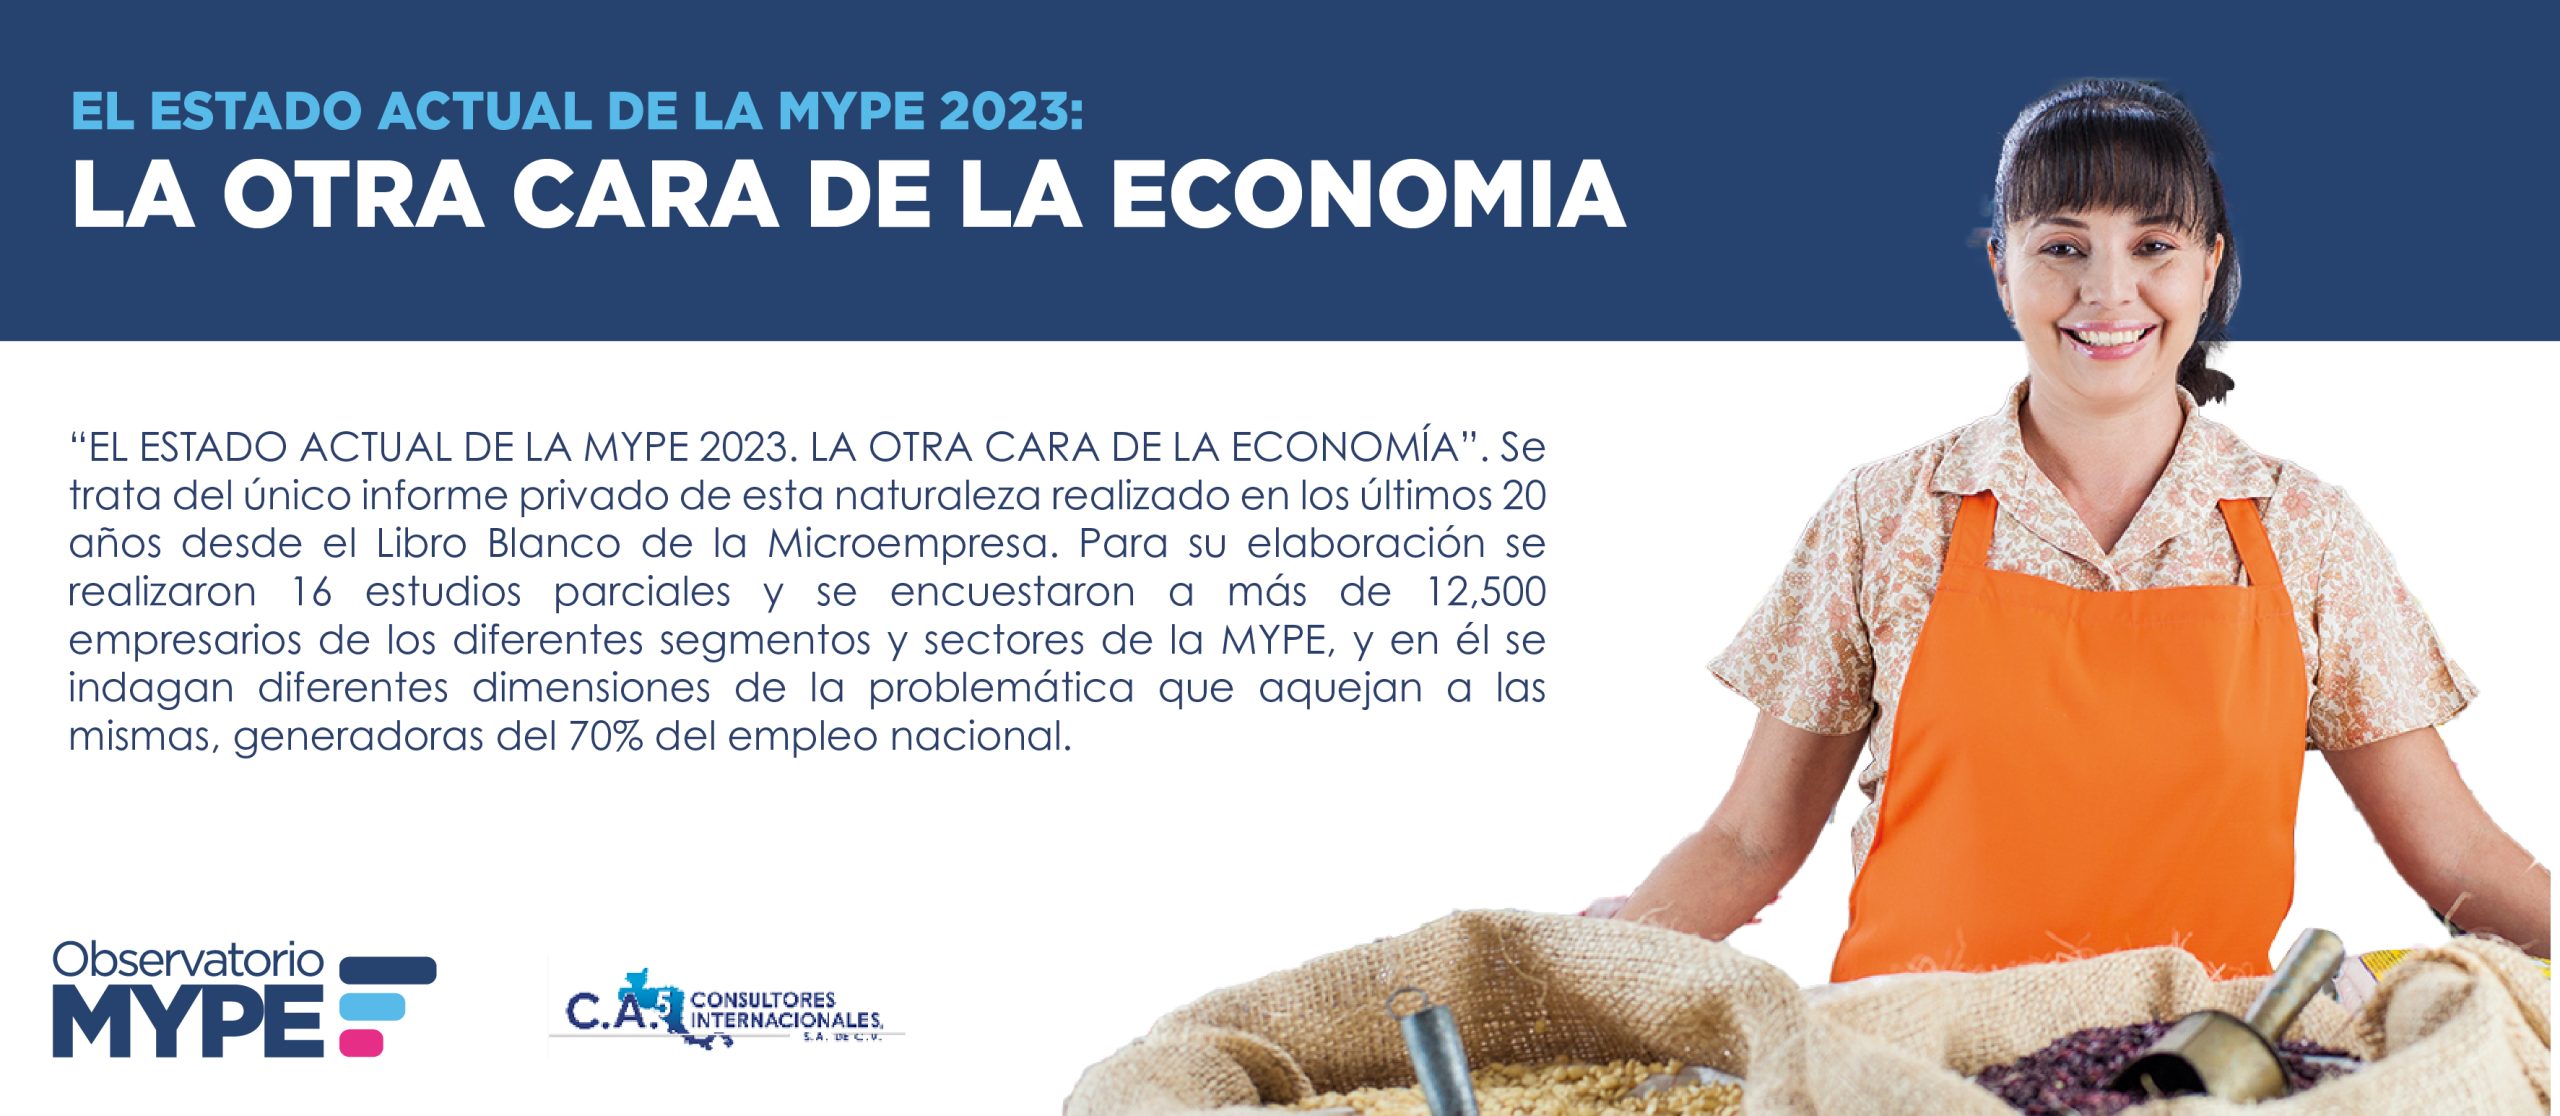 El estado actual de la MYPE 2023: La otra cara de la economía